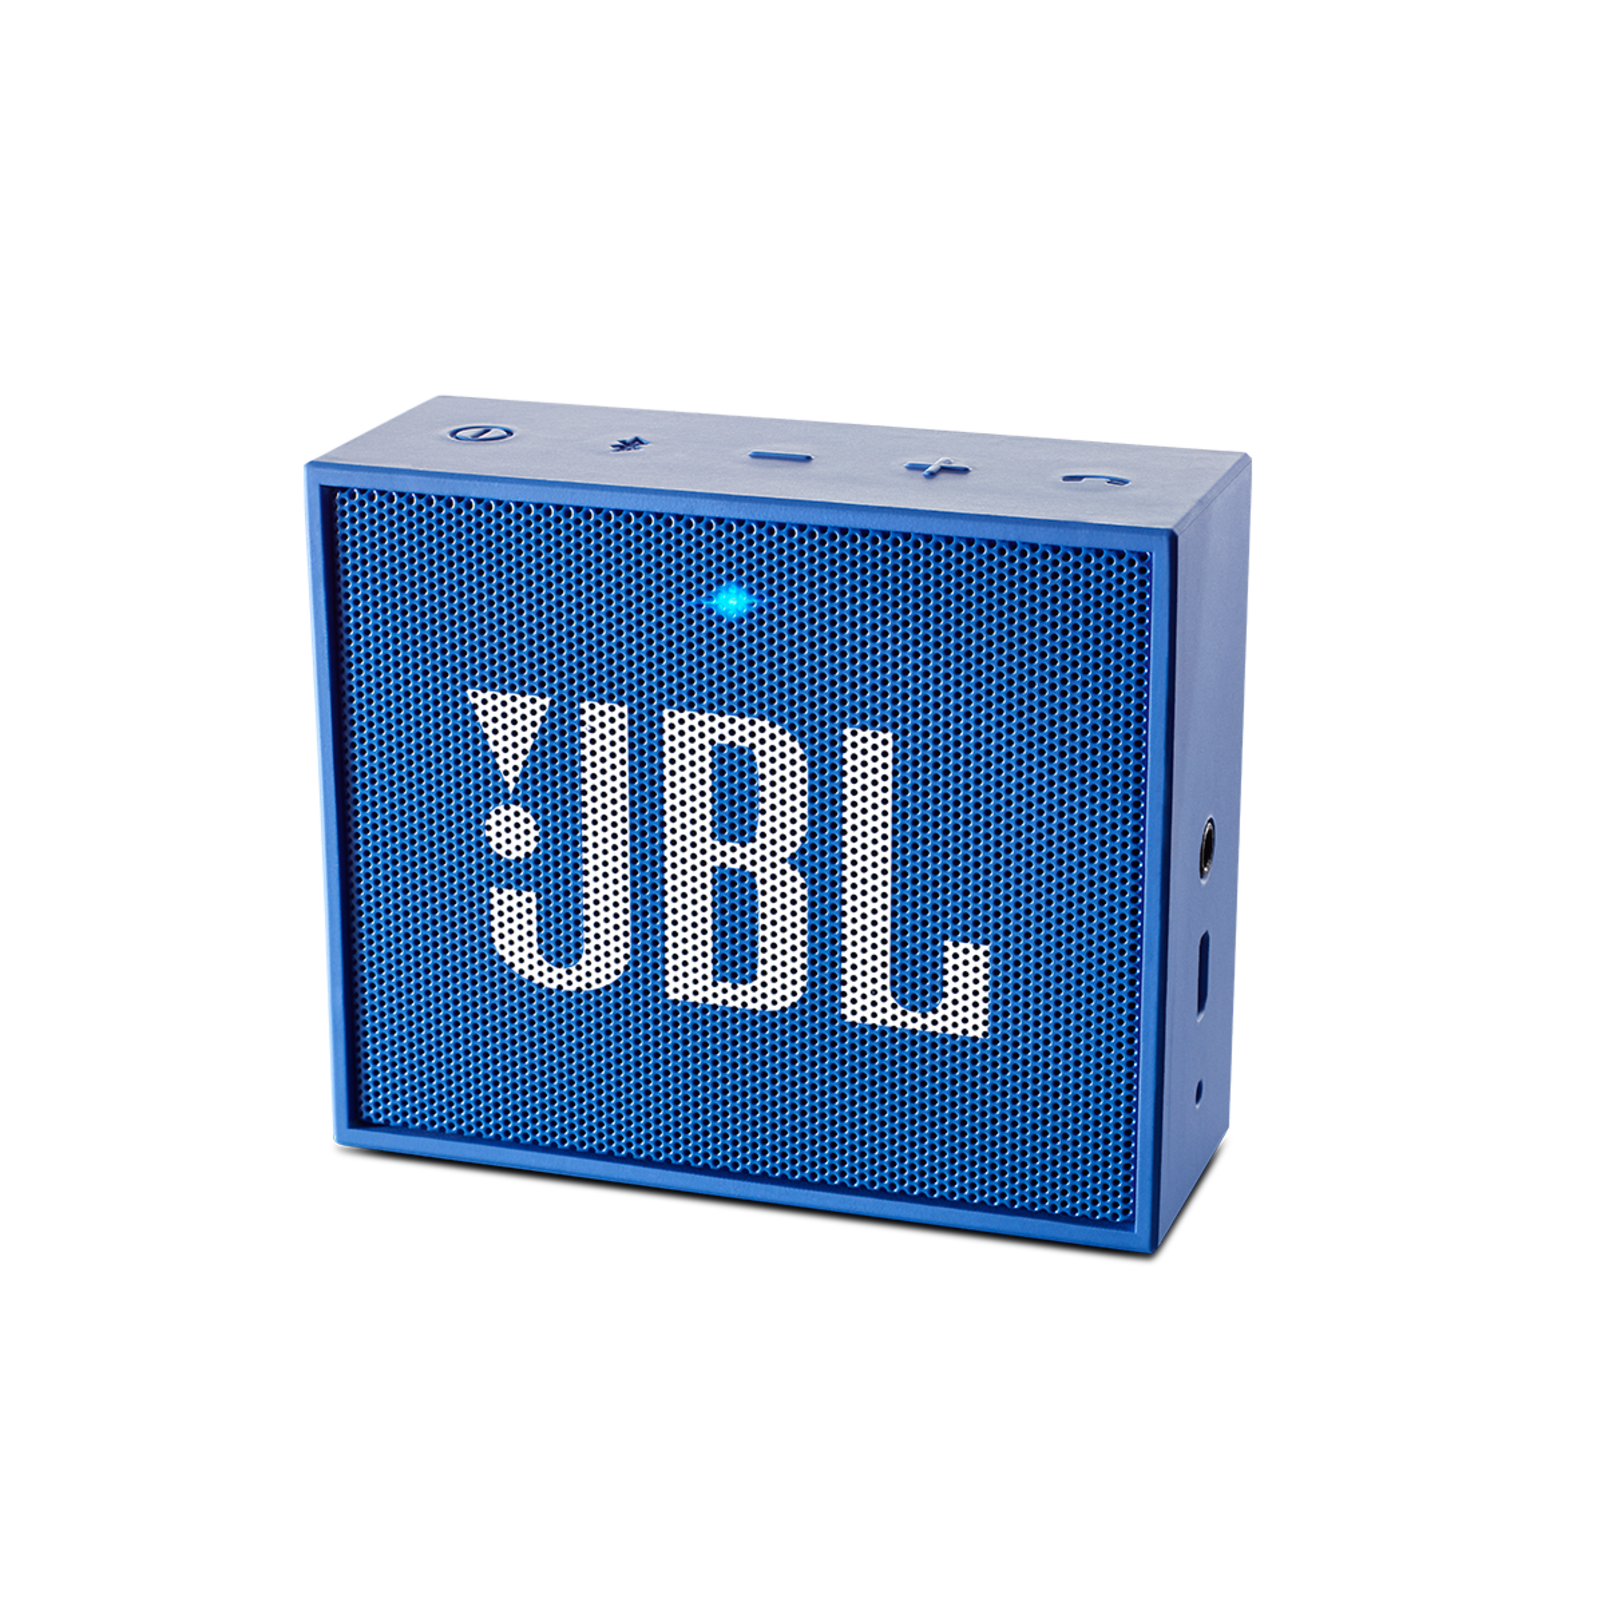 Колонка jbl квадратная. Блютуз колонка JBL go. JBL go колонка синяя. Колонка JBL go квадратная маленькая. JBL go колонка синяя квадратная.